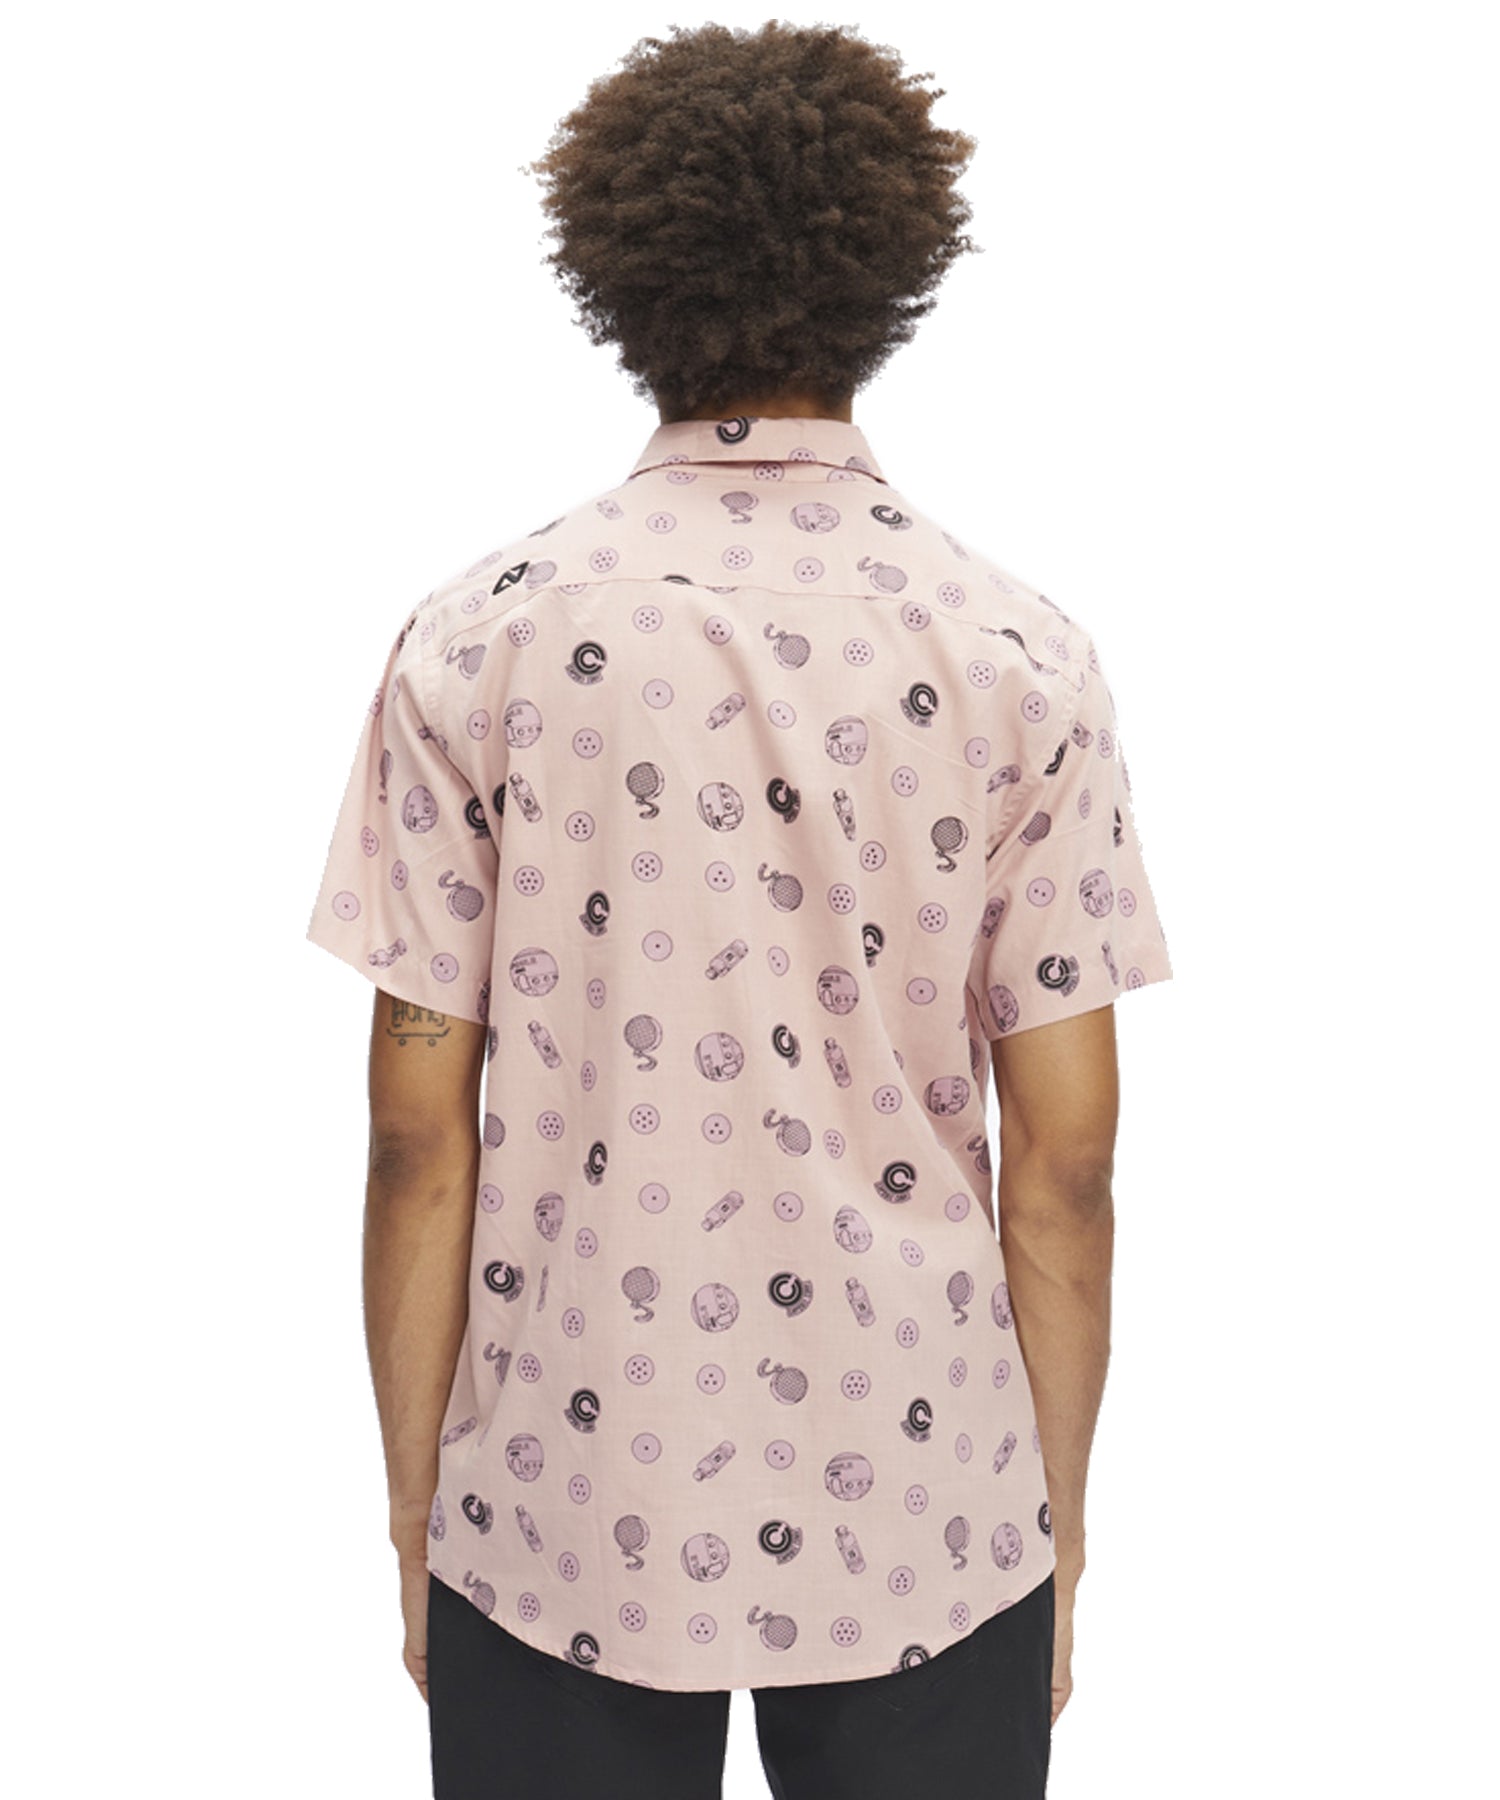 hydroponic-camisa-manga corta-dragon-ball-z-capsule-color-rose-Bolsillo en el pecho-Estampado completo